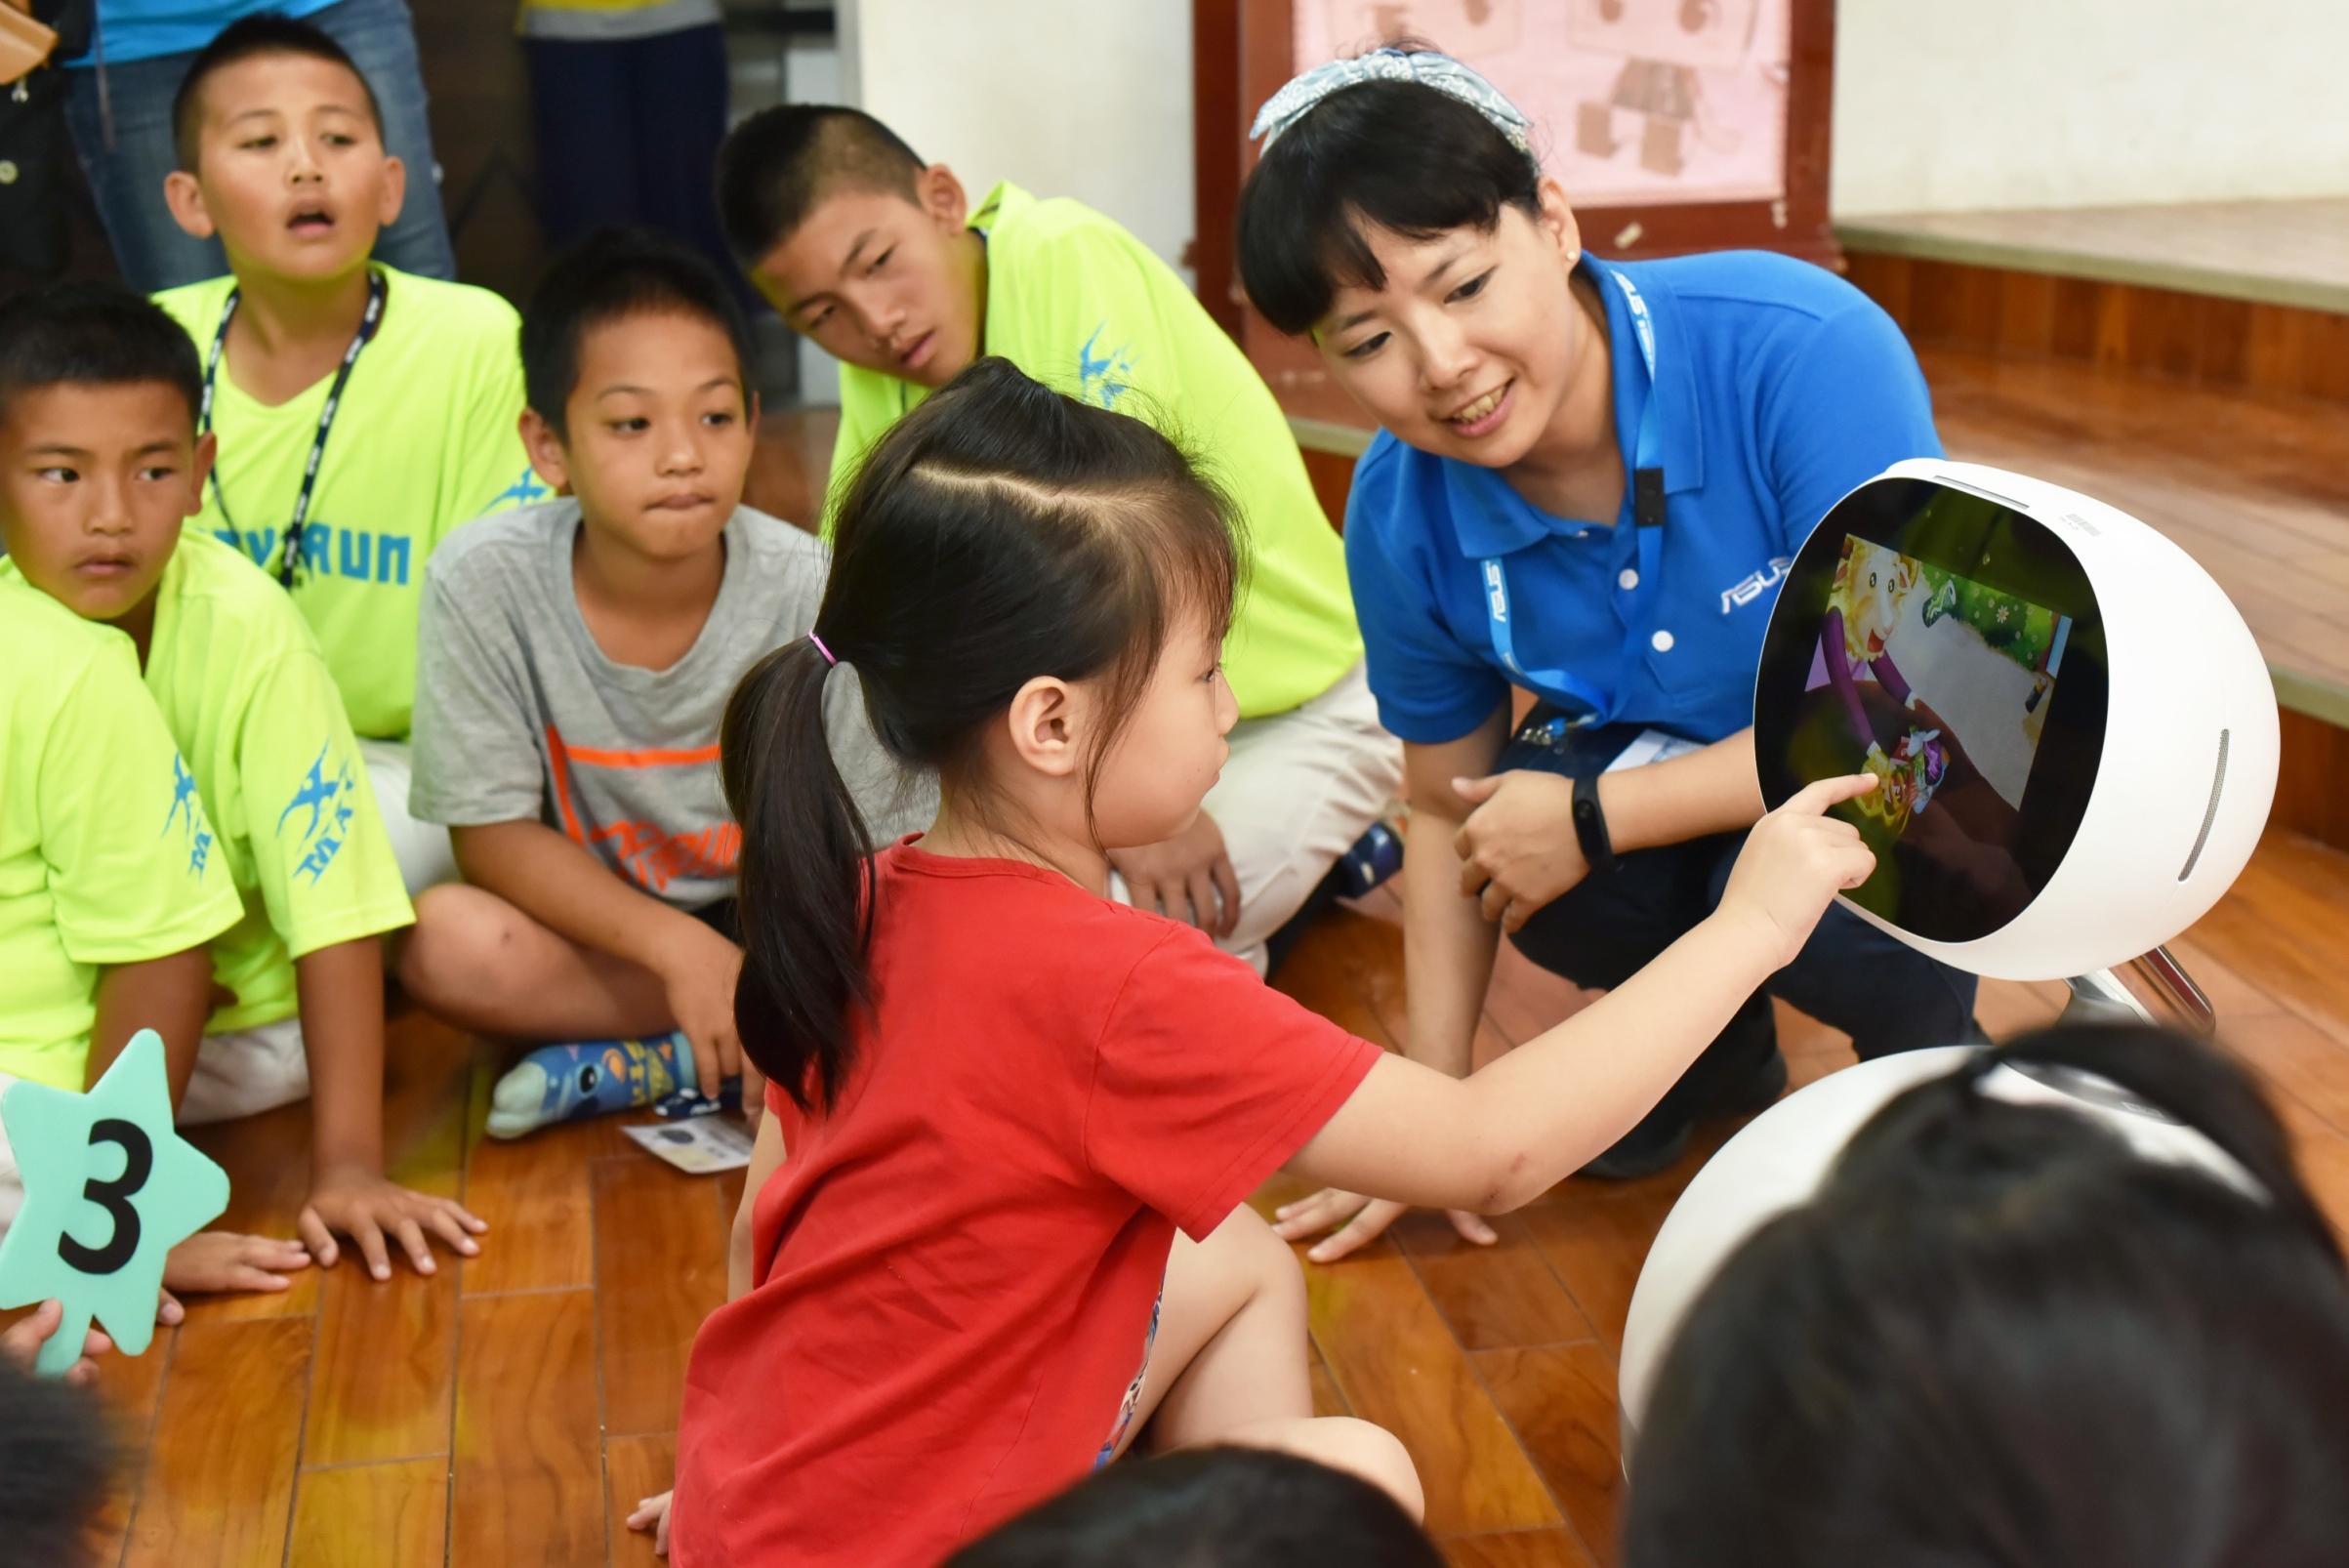 華碩志工教導學童們學習Zenbo編程